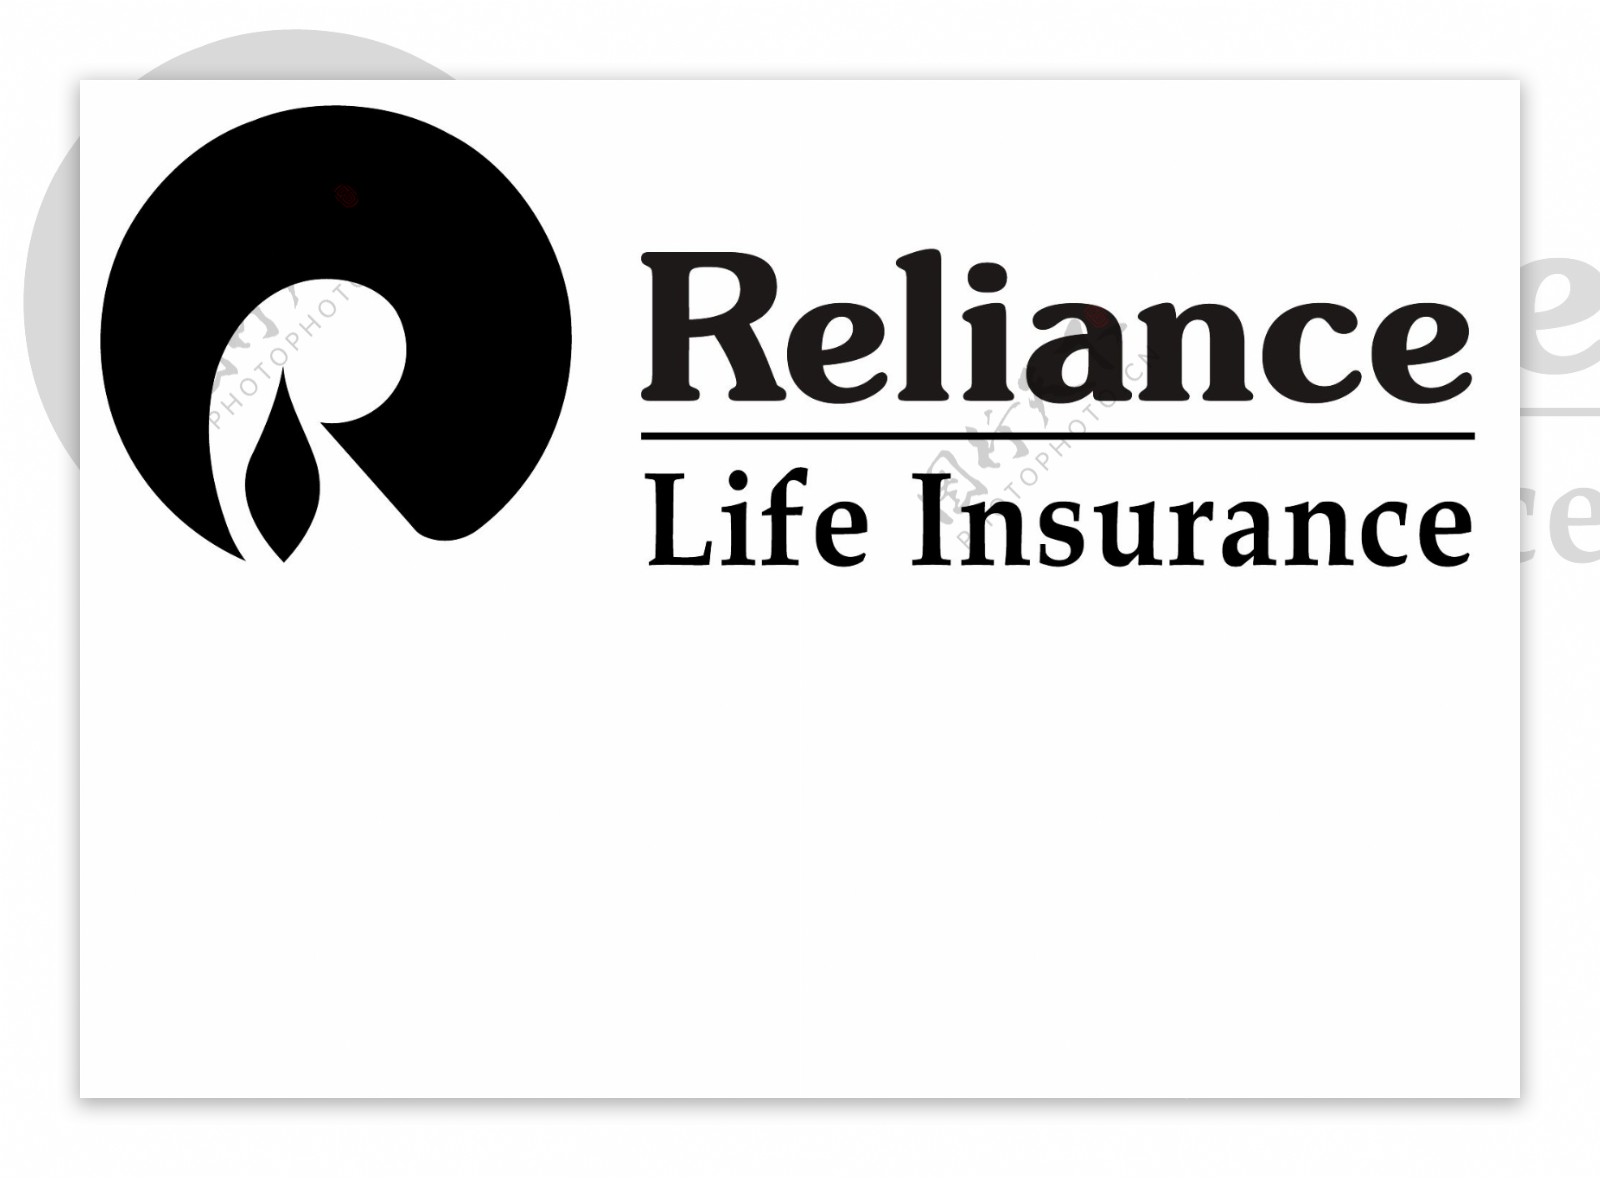 RelianceLifeInsurancelogo设计欣赏RelianceLifeInsurance人寿保险标志下载标志设计欣赏